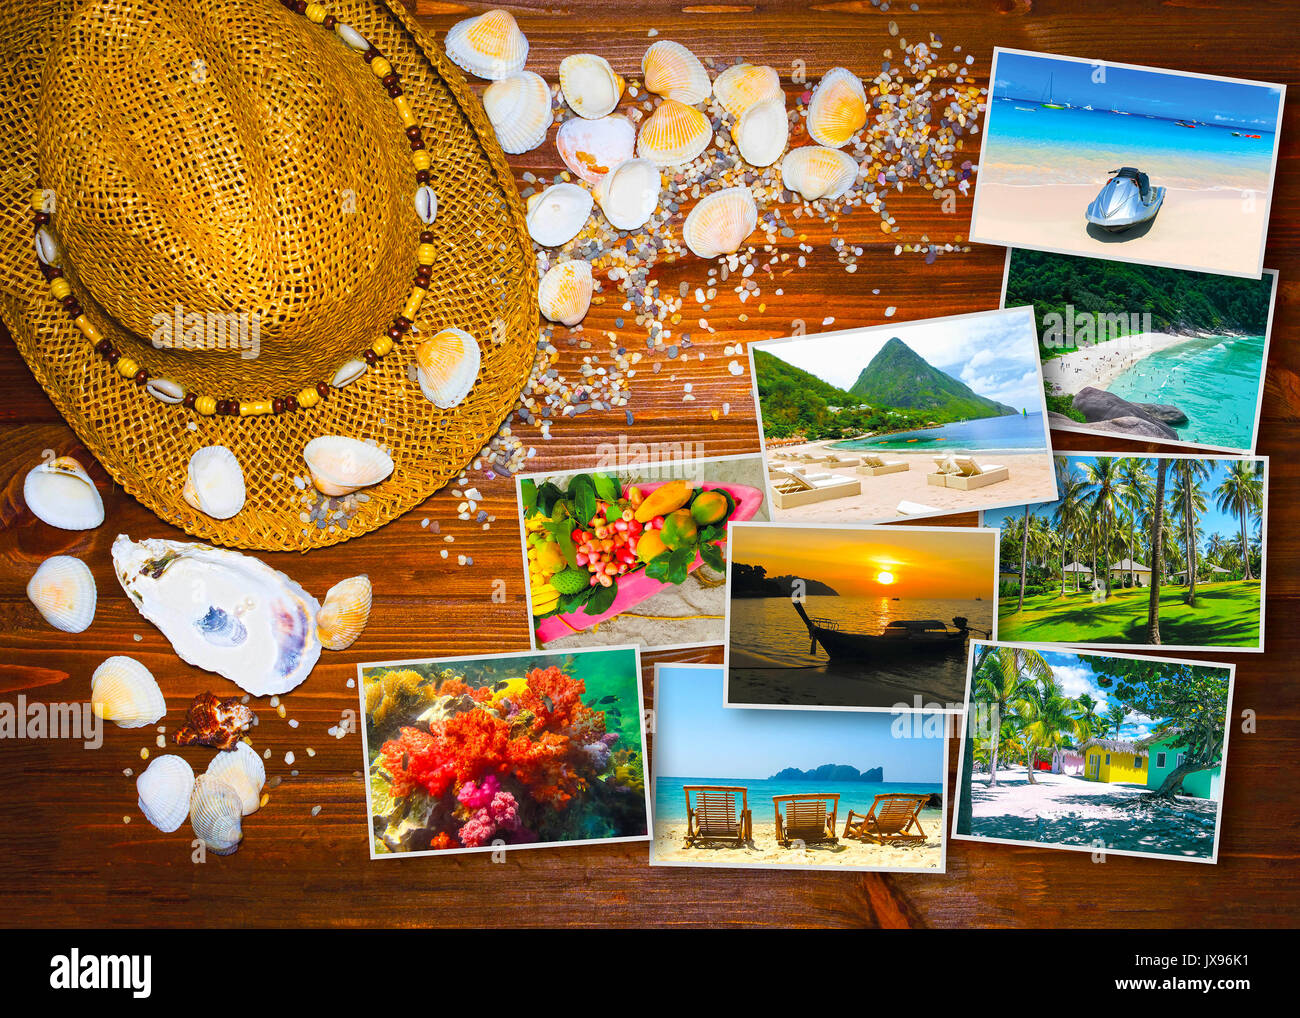 Le voyage, tourisme concept - collage d'images de la Thaïlande Banque D'Images